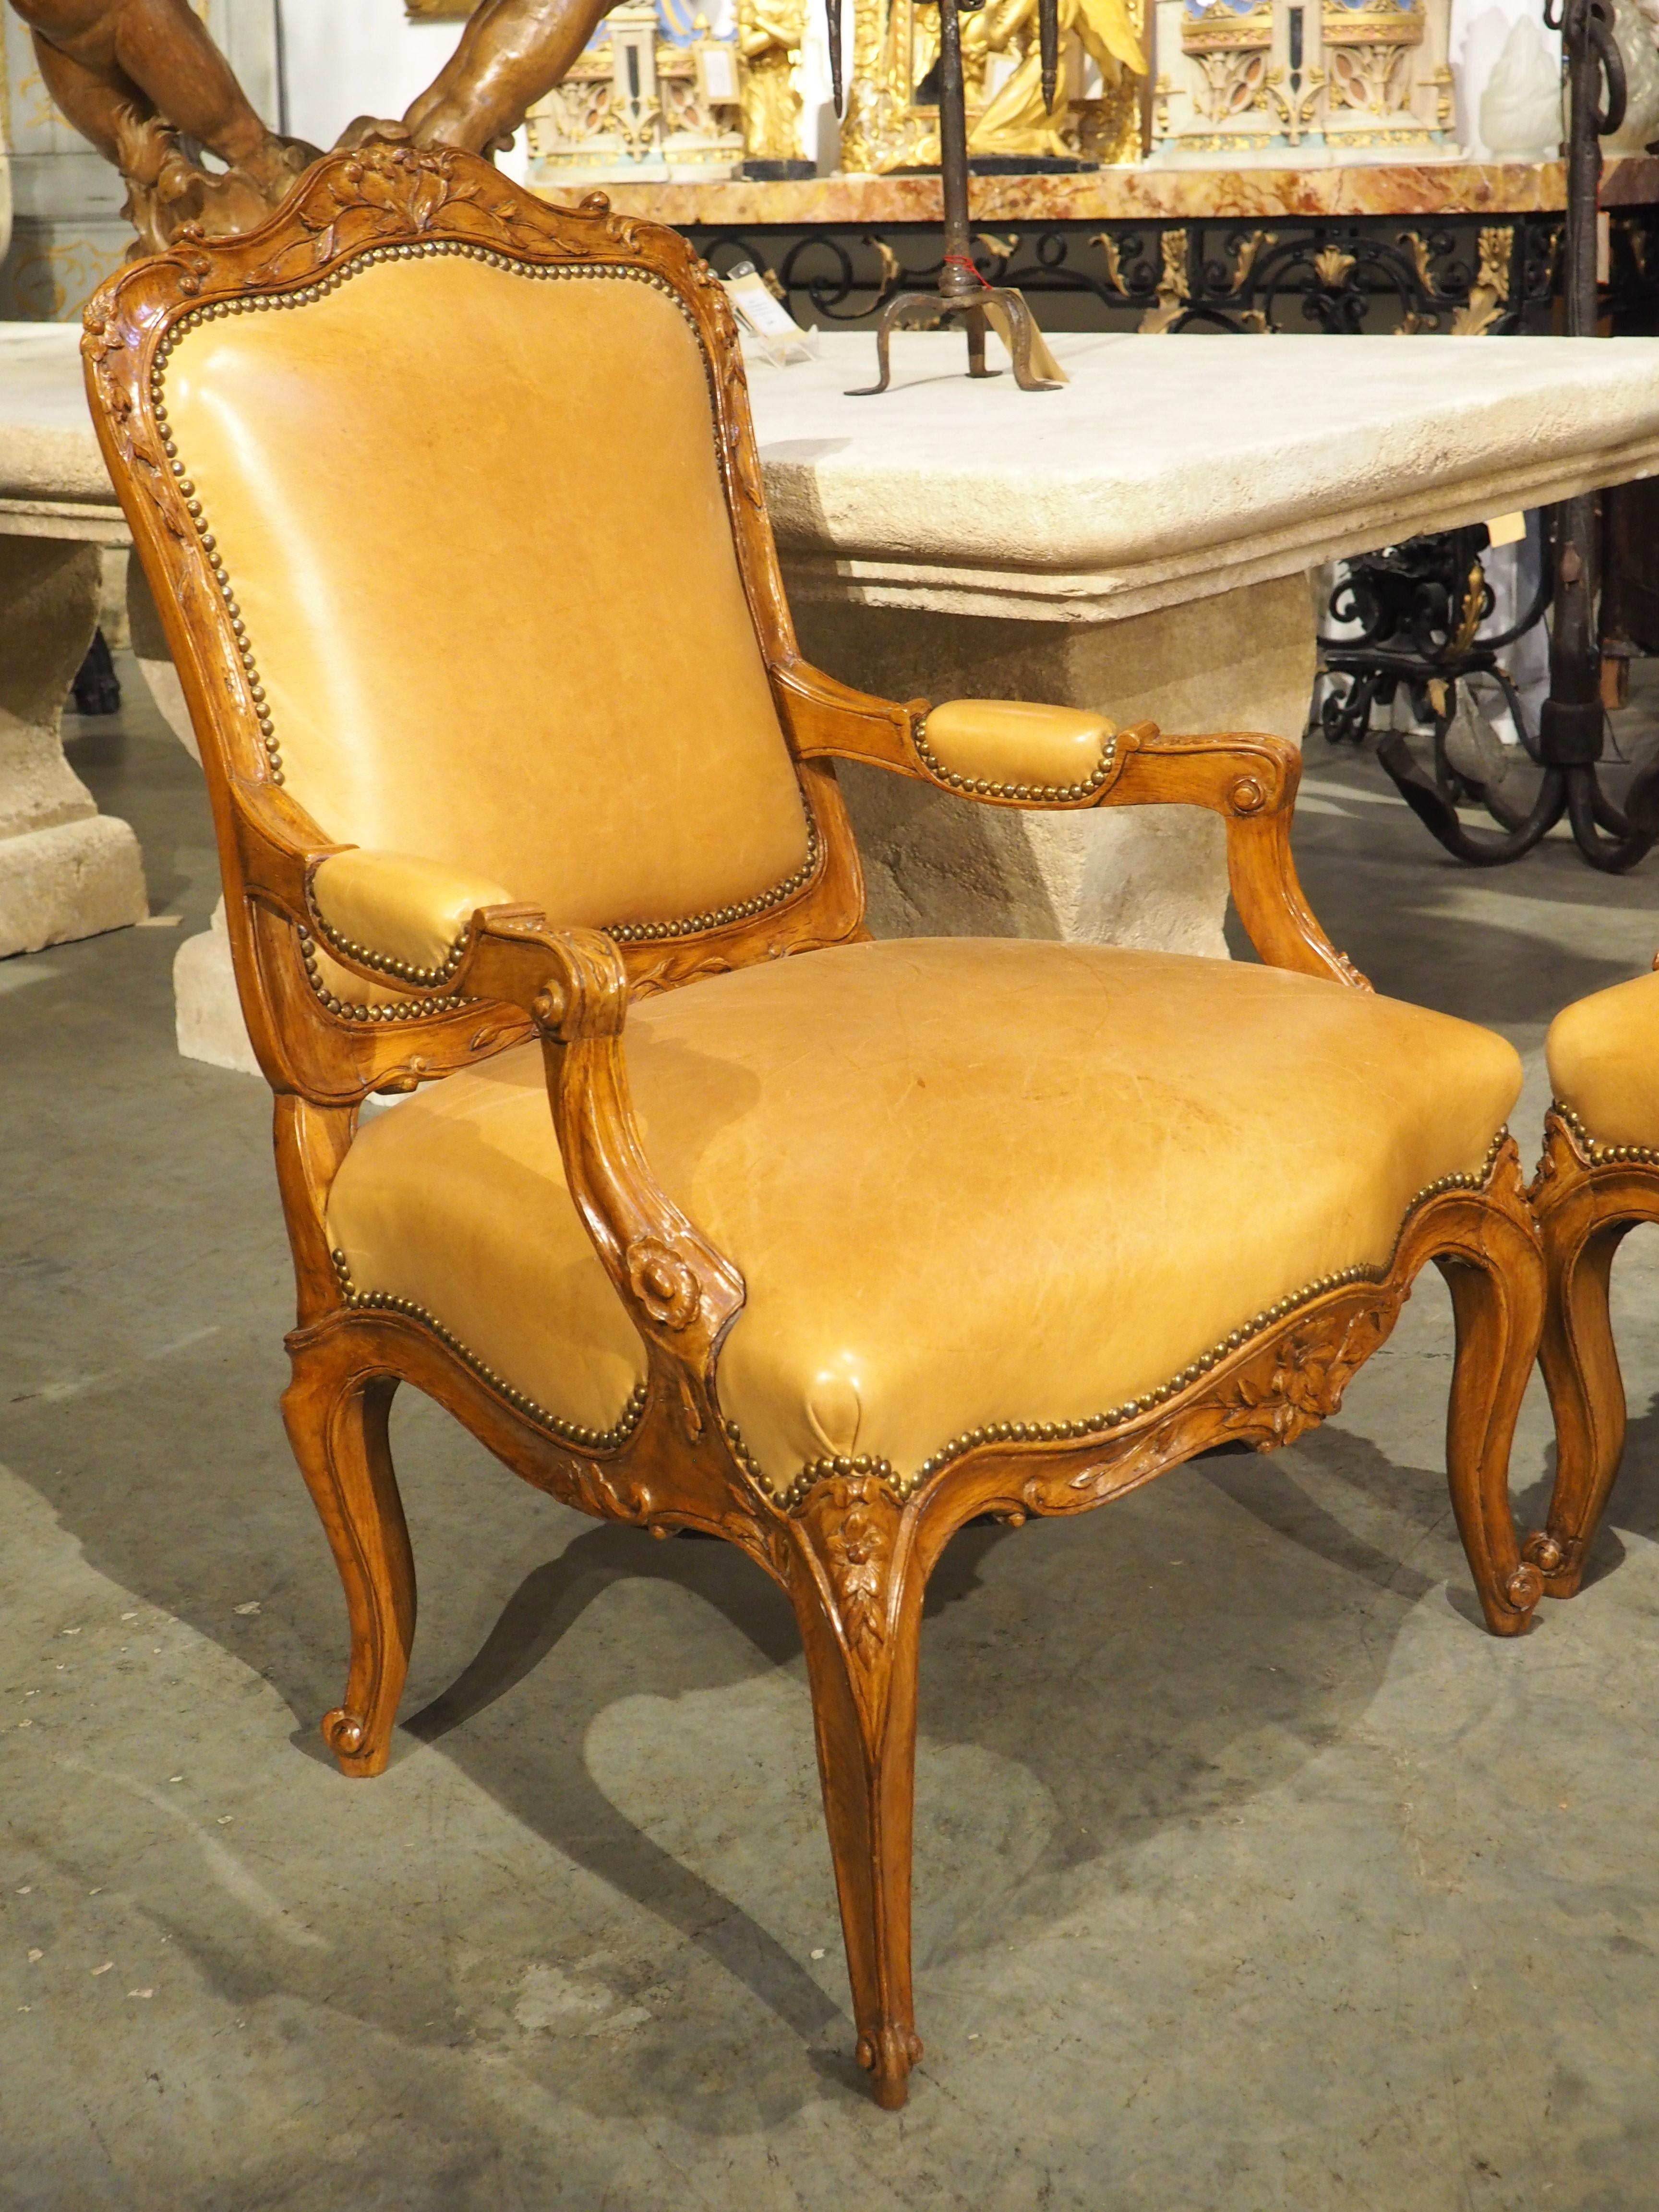 Sculptée à la main vers 1900 dans le style Régence, cette belle paire de fauteuils est recouverte de cuir couleur caramel, formant une palette visuellement étonnante avec la riche patine brune des cadres en bois vernis. Chaque dossier de chaise,